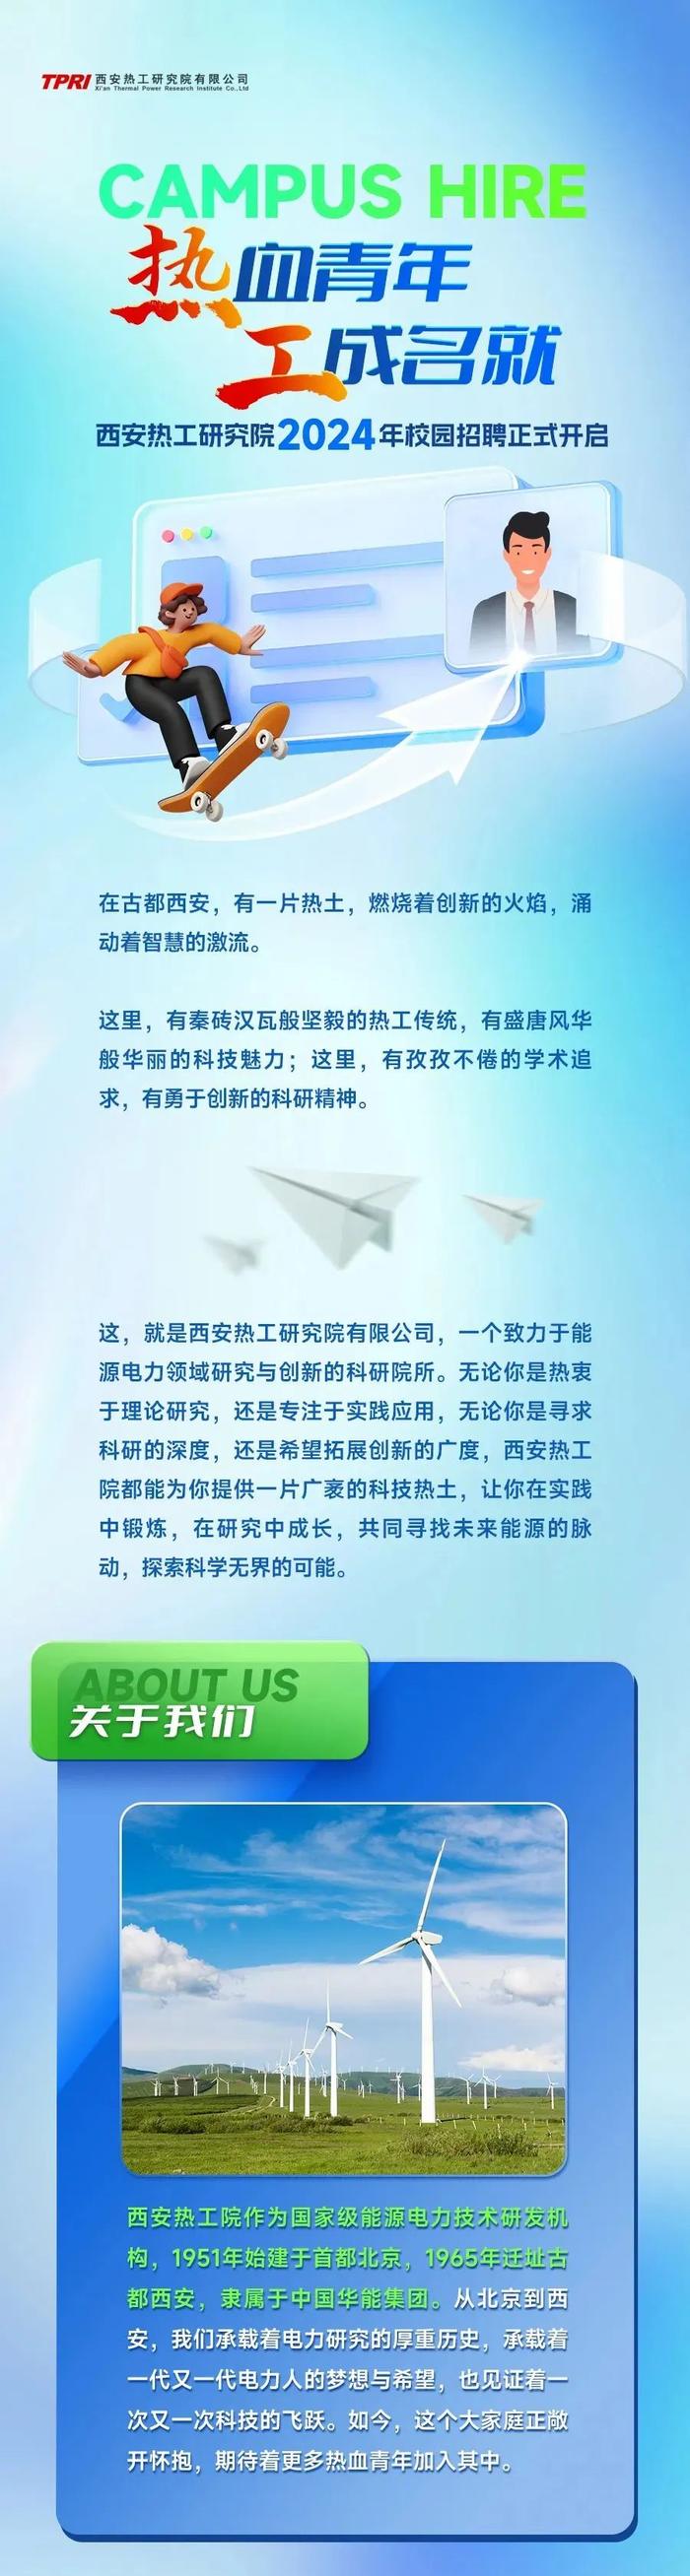 【校招】中国华能西安热工院2024年校园招聘公告